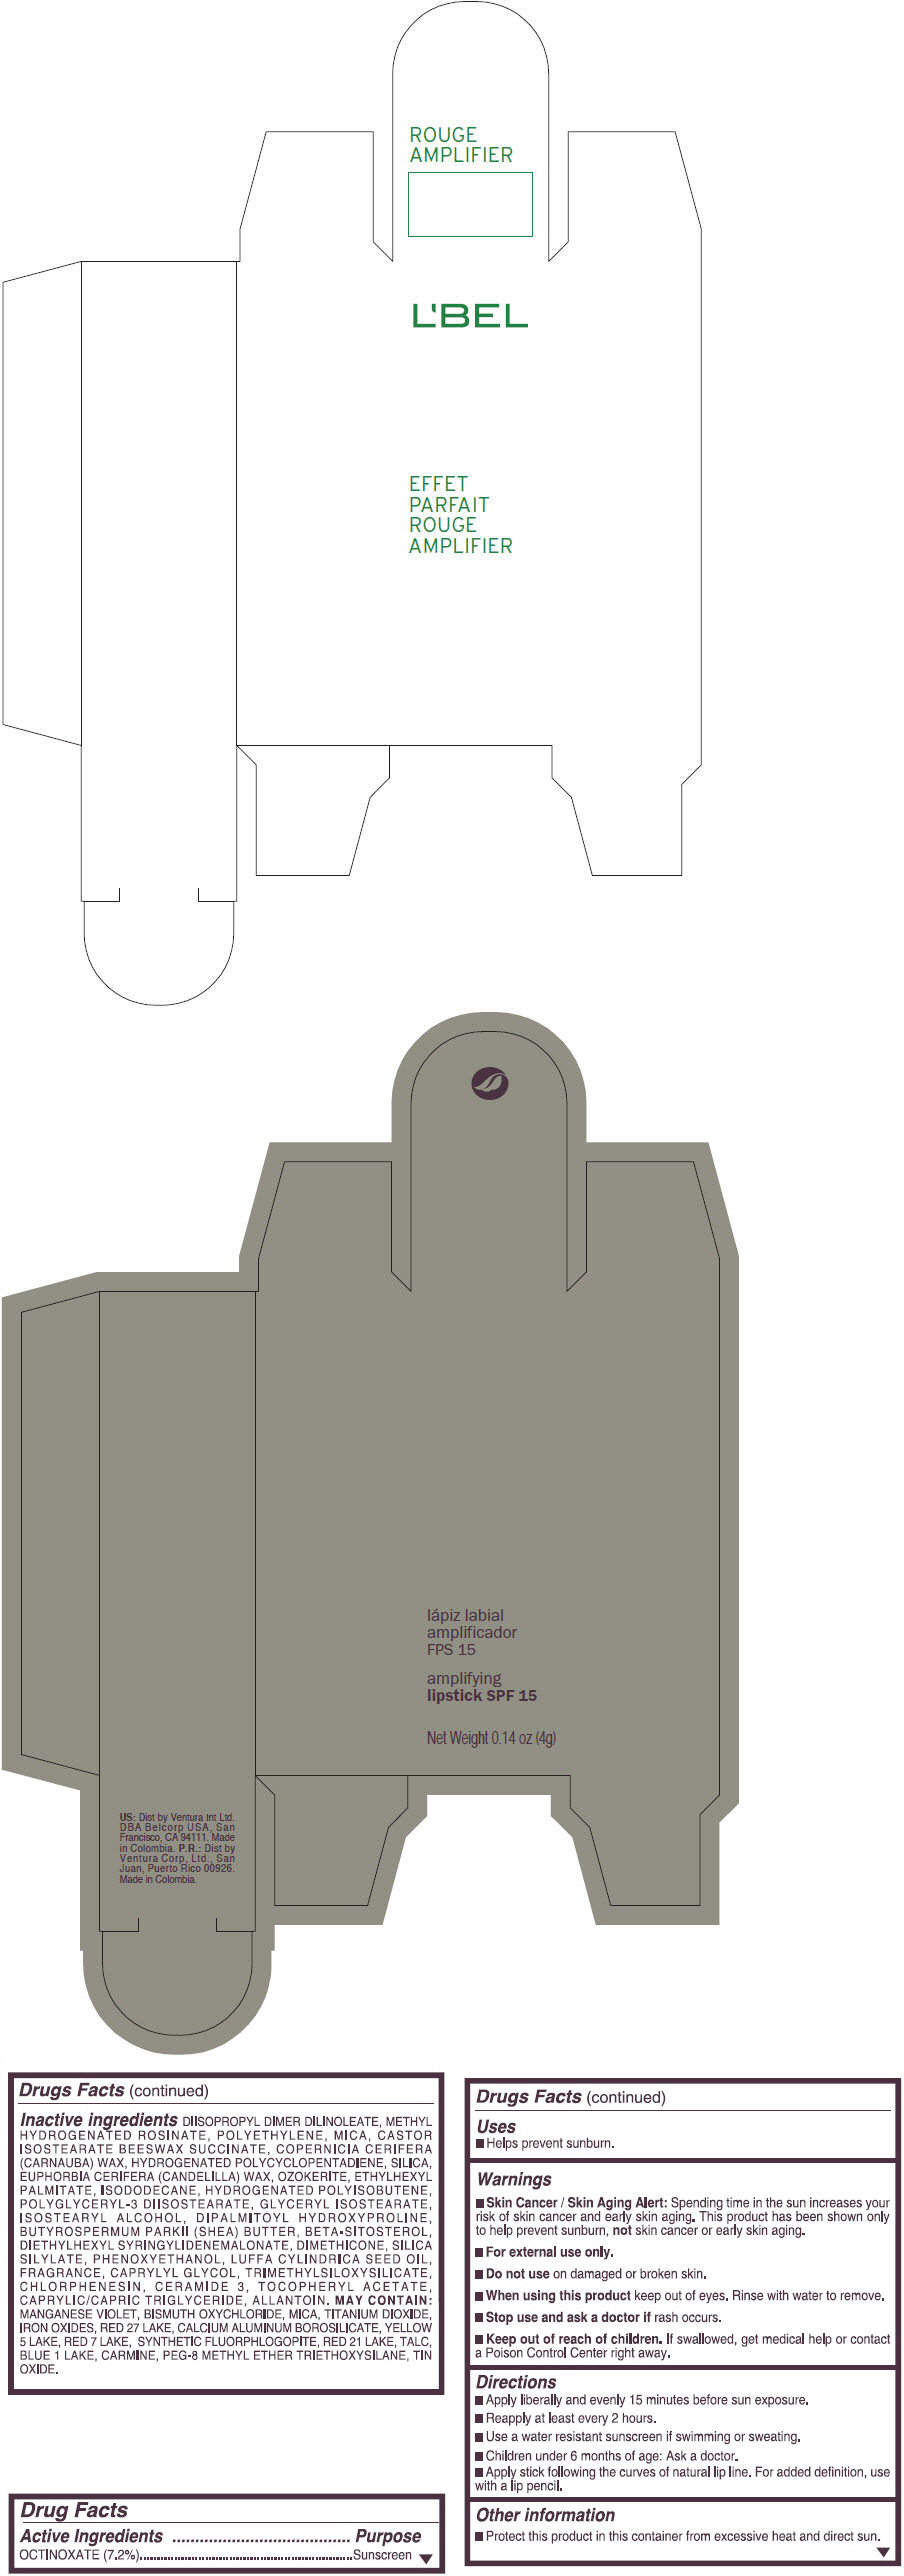 PRINCIPAL DISPLAY PANEL - 4 g Tube Box - (MYSTIC ROSE) - PINK